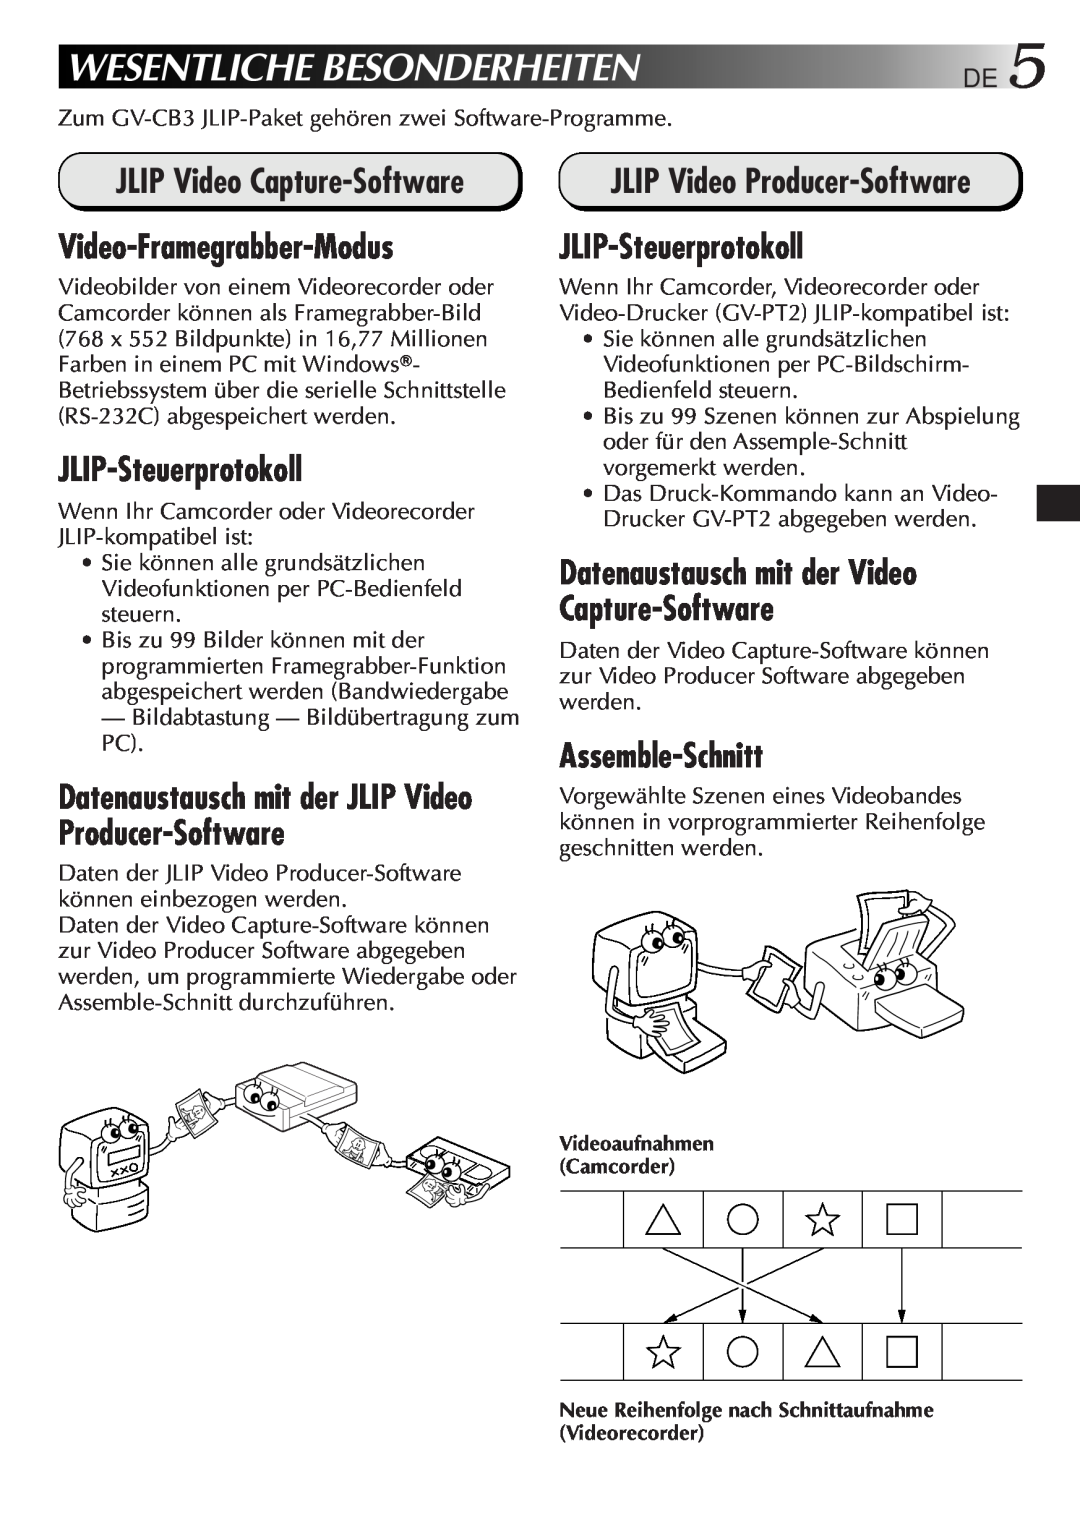 JVC GV-CB3E manual Wesentliche Besonderheiten, JLIP Video Capture-Software, Video-Framegrabber-Modus, JLIP-Steuerprotokoll 